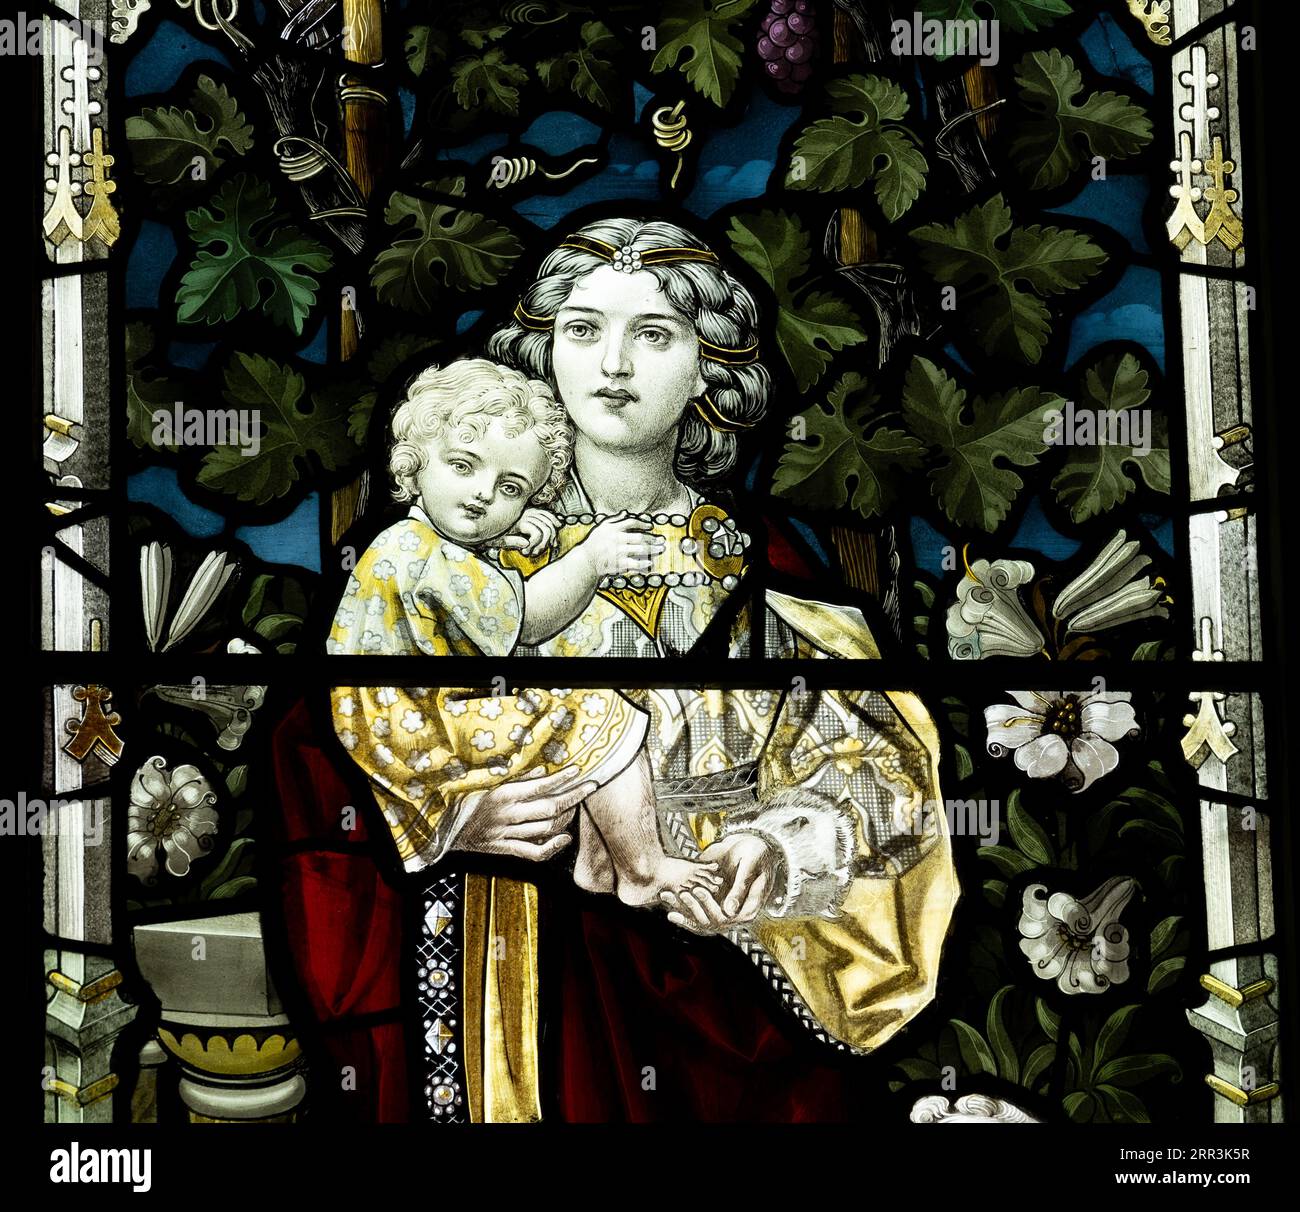 Un détail de vitrail de bonne femme, All Saints Church, Allesley, West Midlands, Angleterre, ROYAUME-UNI Banque D'Images